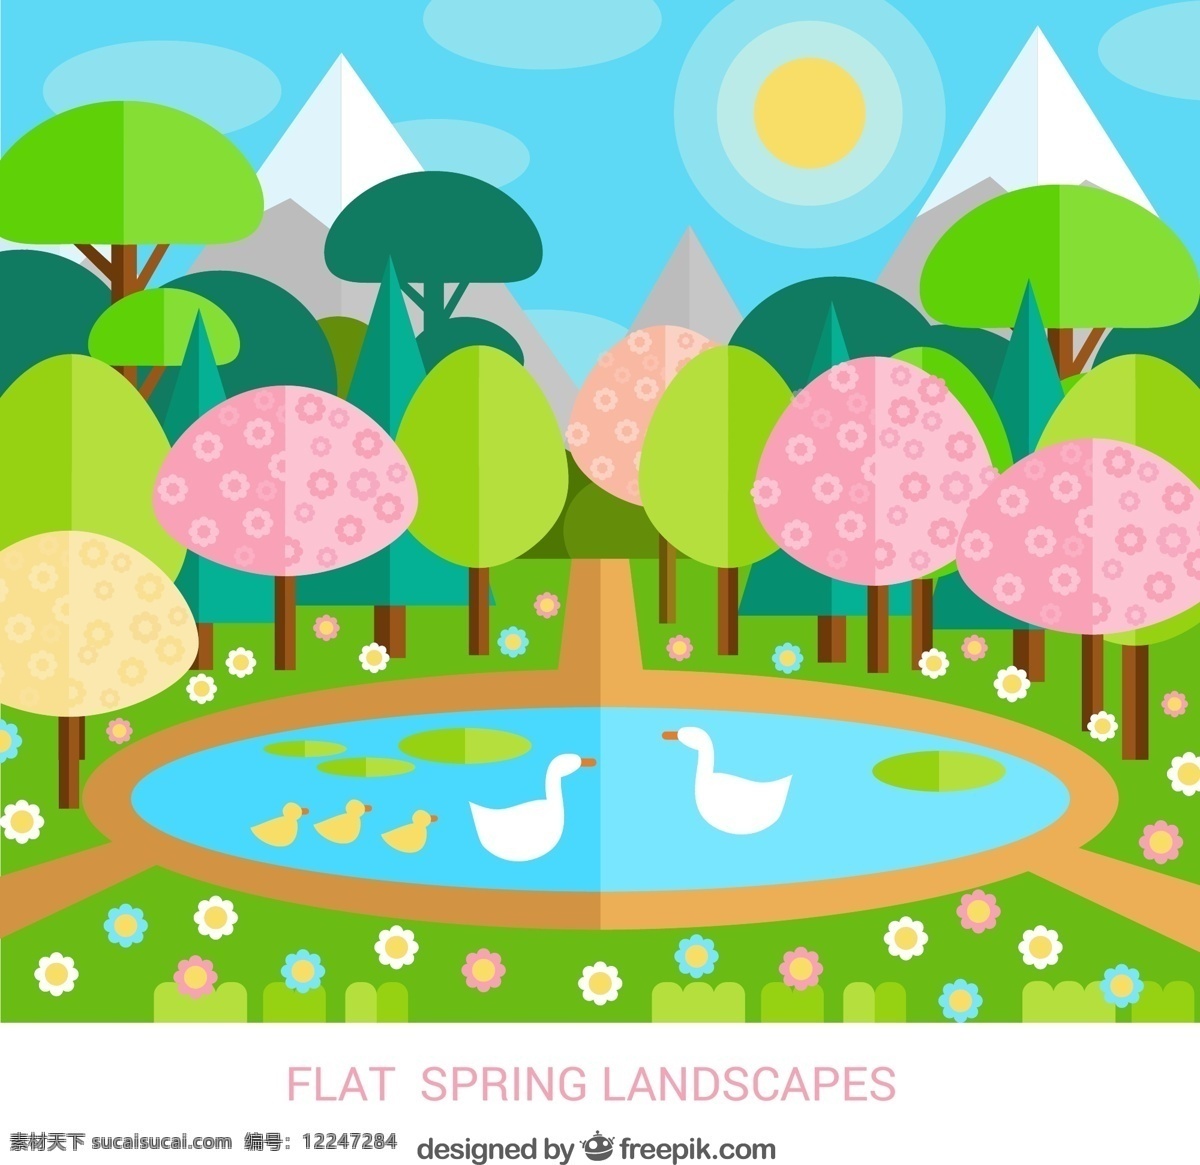 春季 池塘 里 鹅 风景 矢量 扁平化 树木 太阳 花卉 雪山 动漫动画 风景漫画